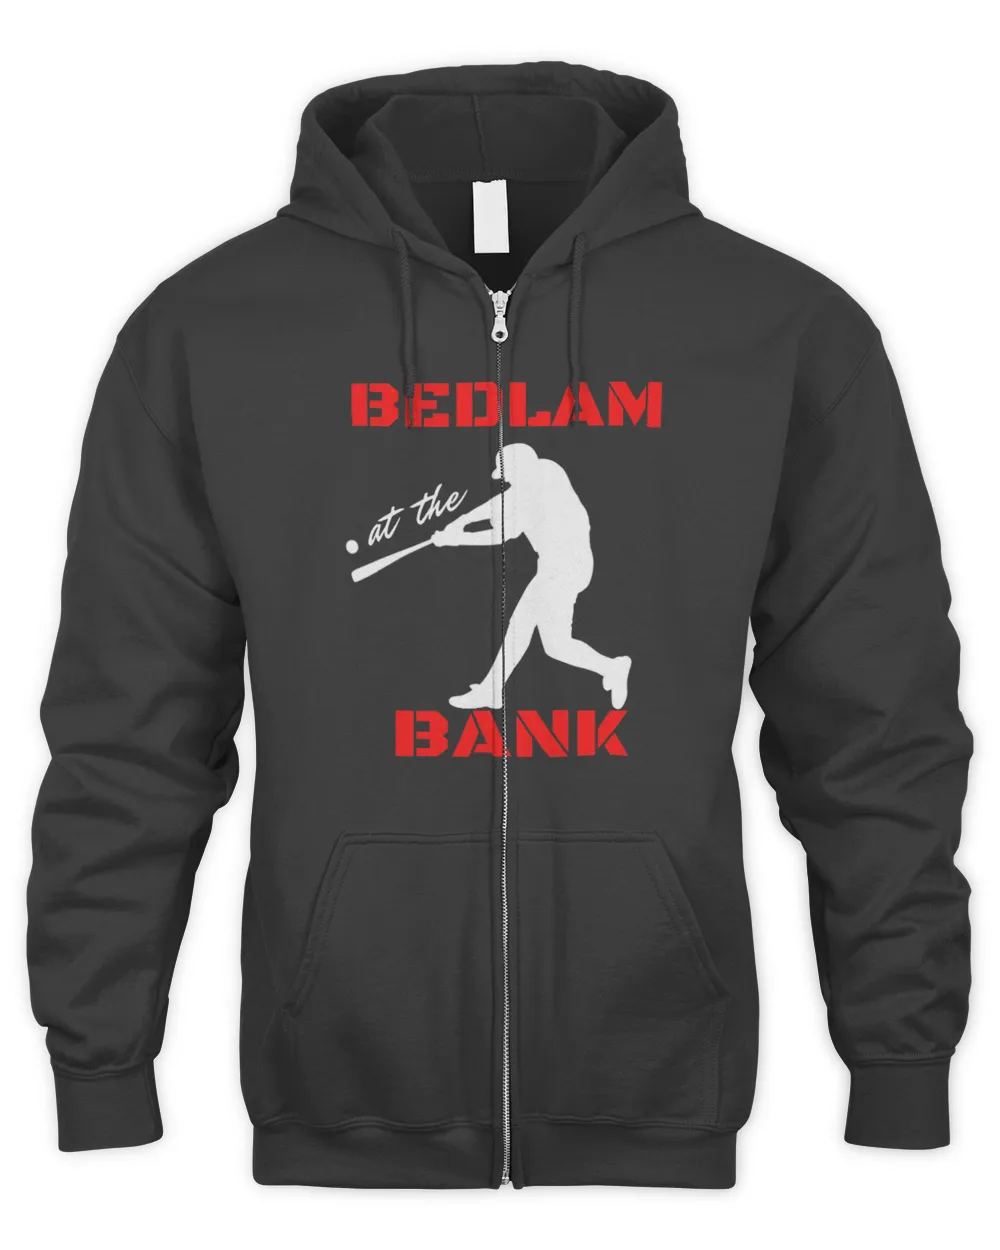 Bedlam at the bank. baseball fans gift